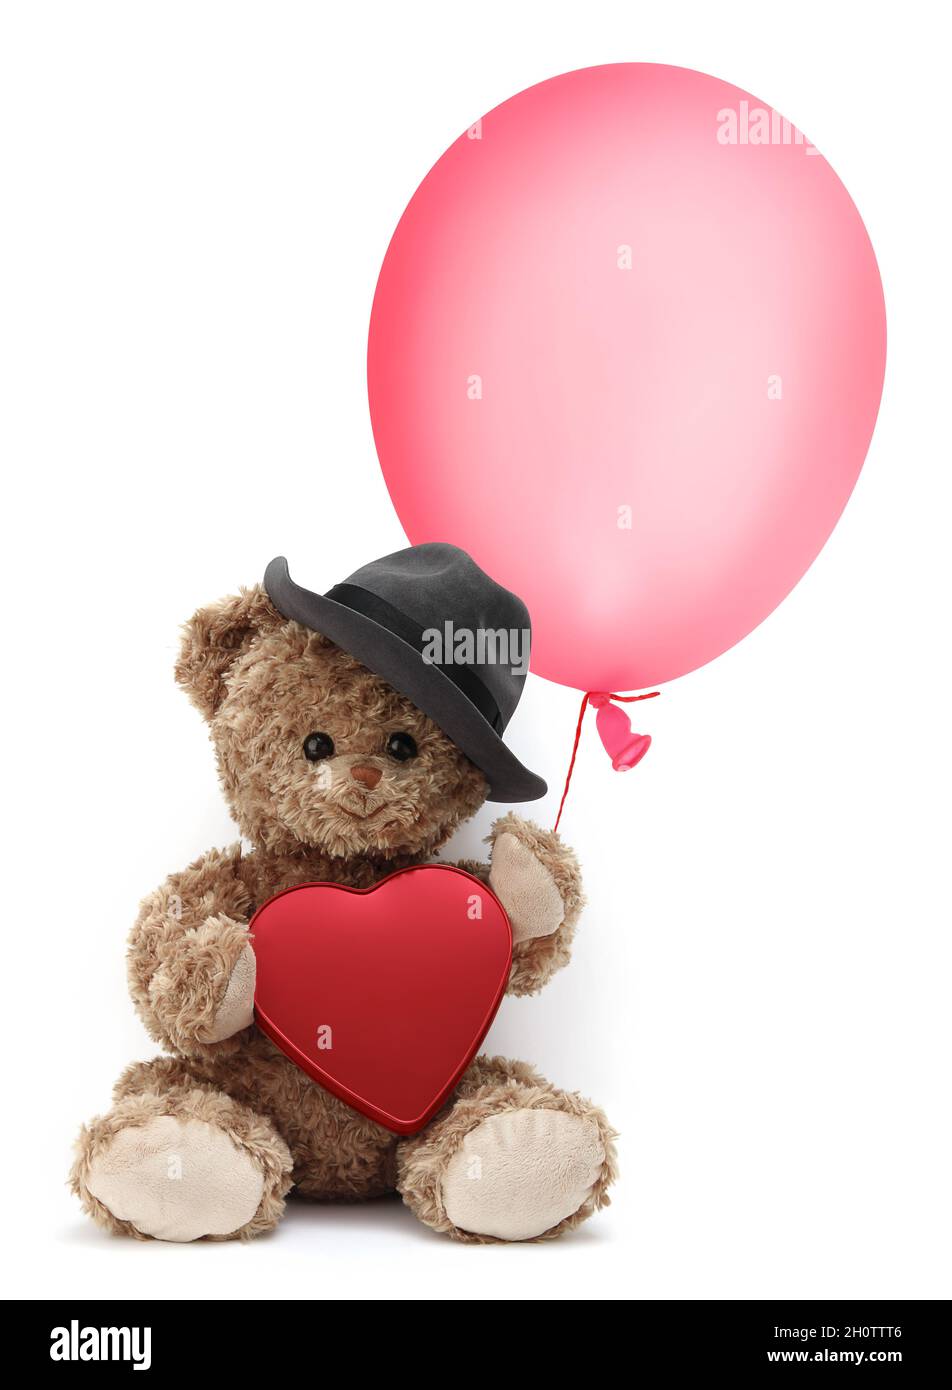 Der niedliche Teddybär trägt einen Hut und hält einen Ballon und ein rotes Herz, isoliert auf weißem Hintergrund Stockfoto